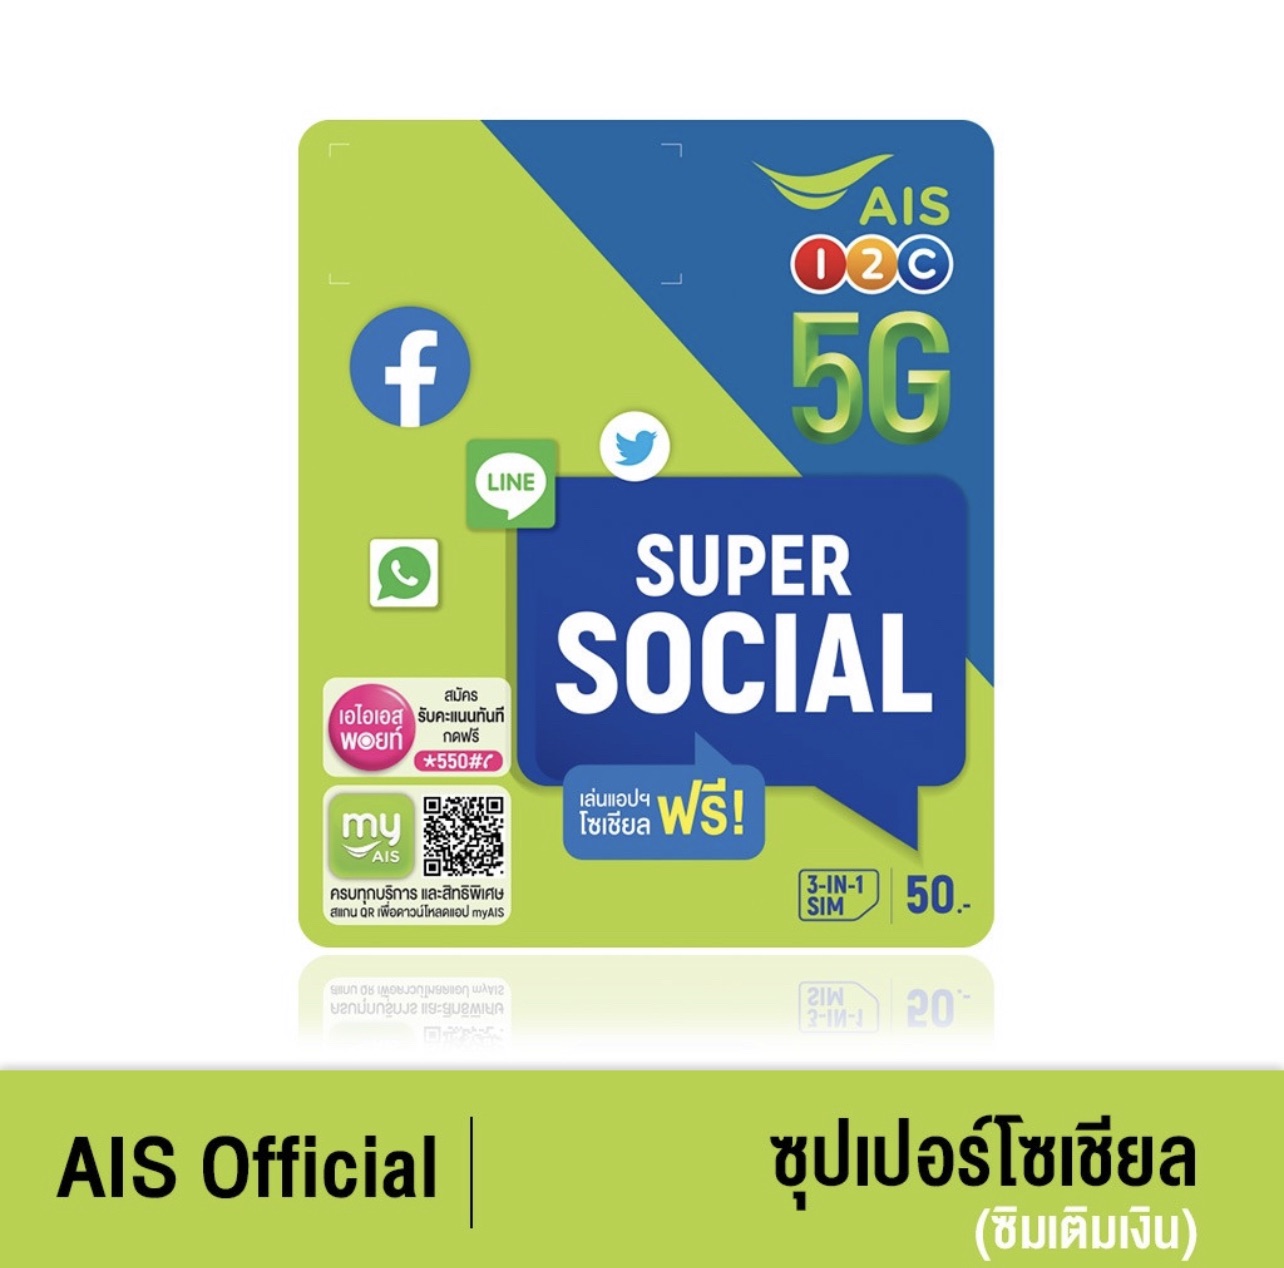 AIS Super Social SIM ฟรี Social App ไม่อั้น 4 Mbps (facebook, Messenger, LINE, Whatsapp, Twitter) นาน 30 วัน